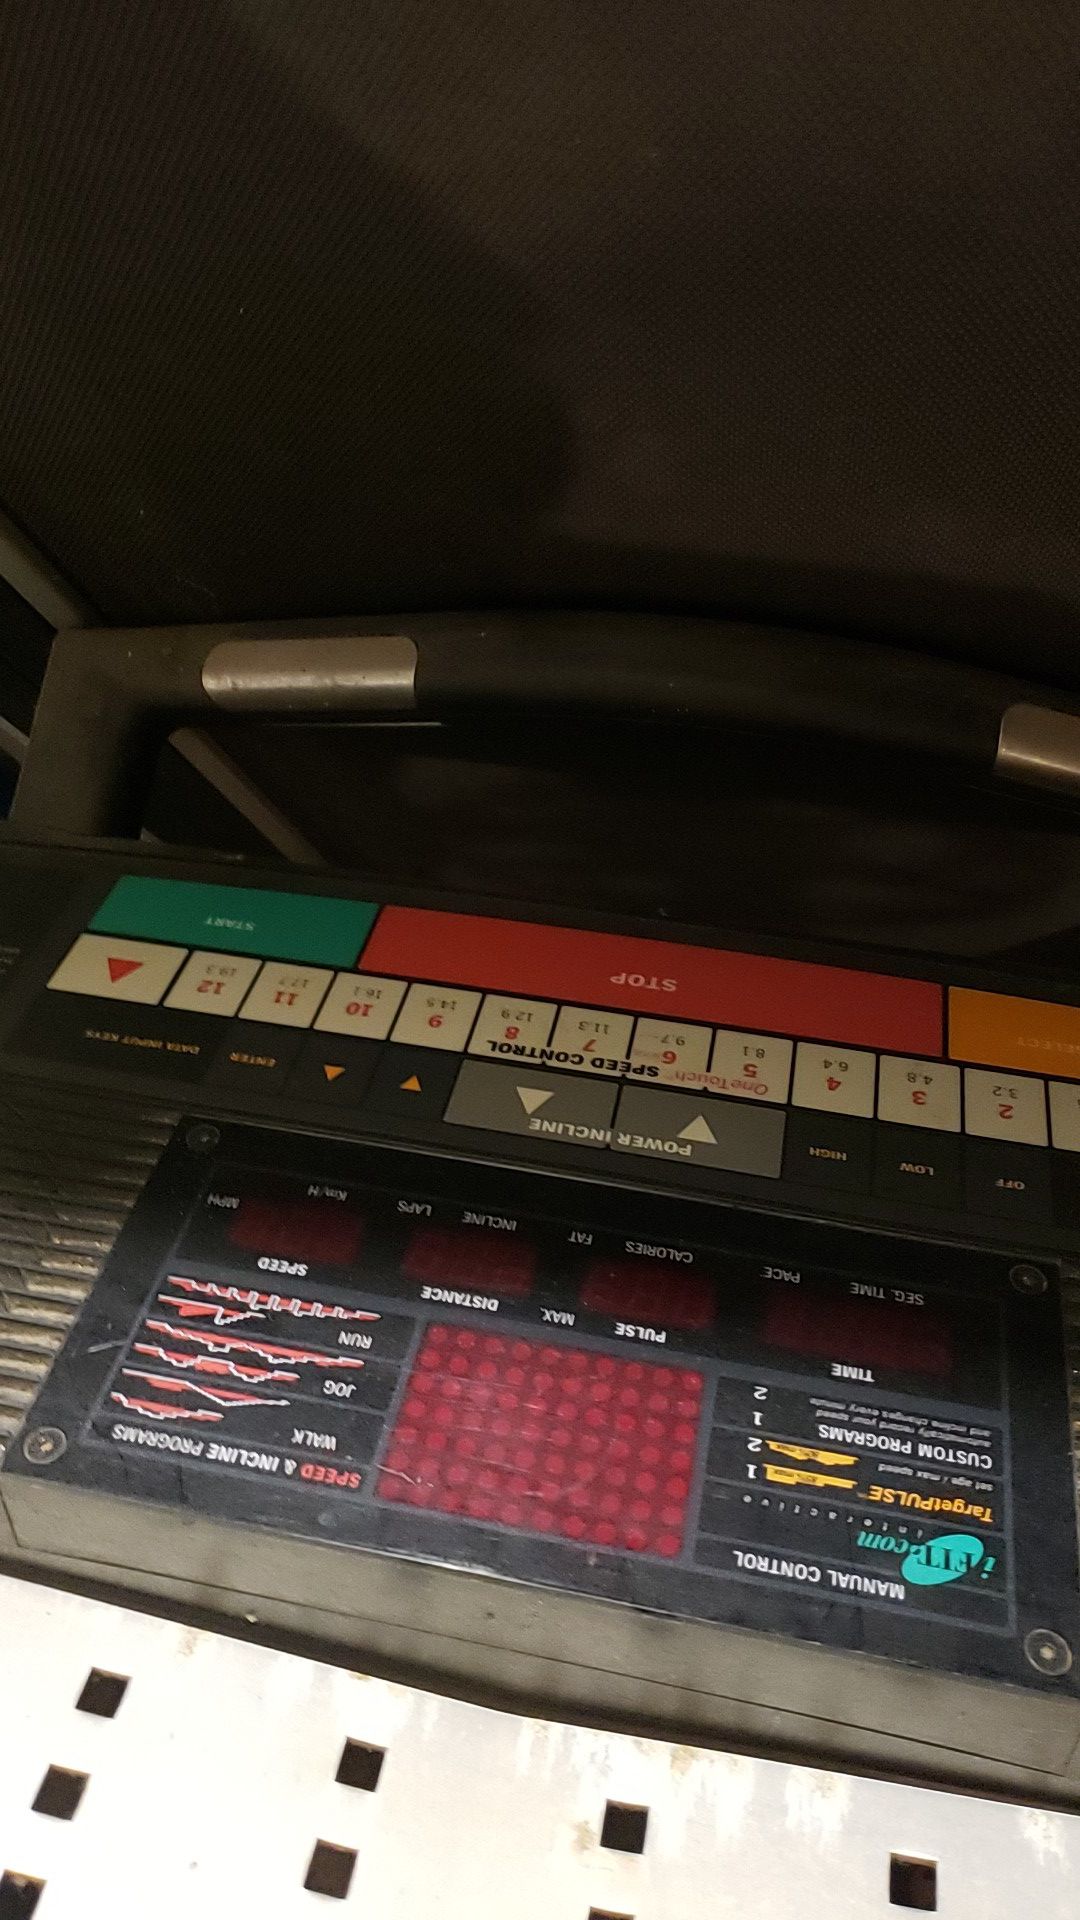 Health Rider softstrider R60 Treadmill